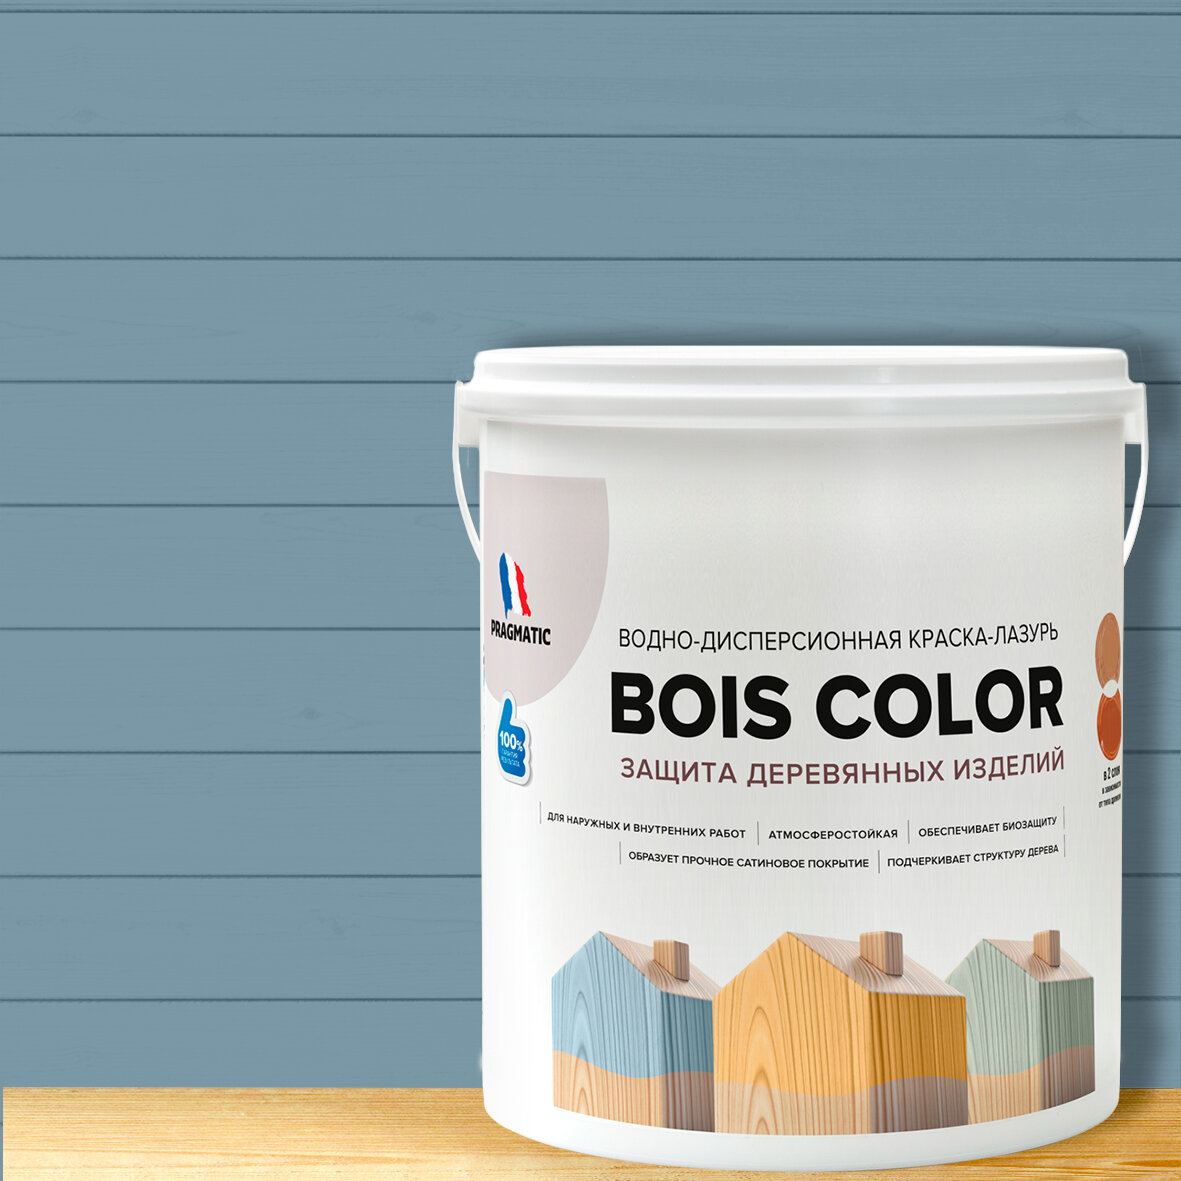 Краска (лазурь) для деревянных поверхностей и фасадов, обеспечивает биозащиту, защищает от плесени, грибков, атмосферостойкая, водоотталкивающая BOIS COLOR 0,9 л цвет Темно синий 7383